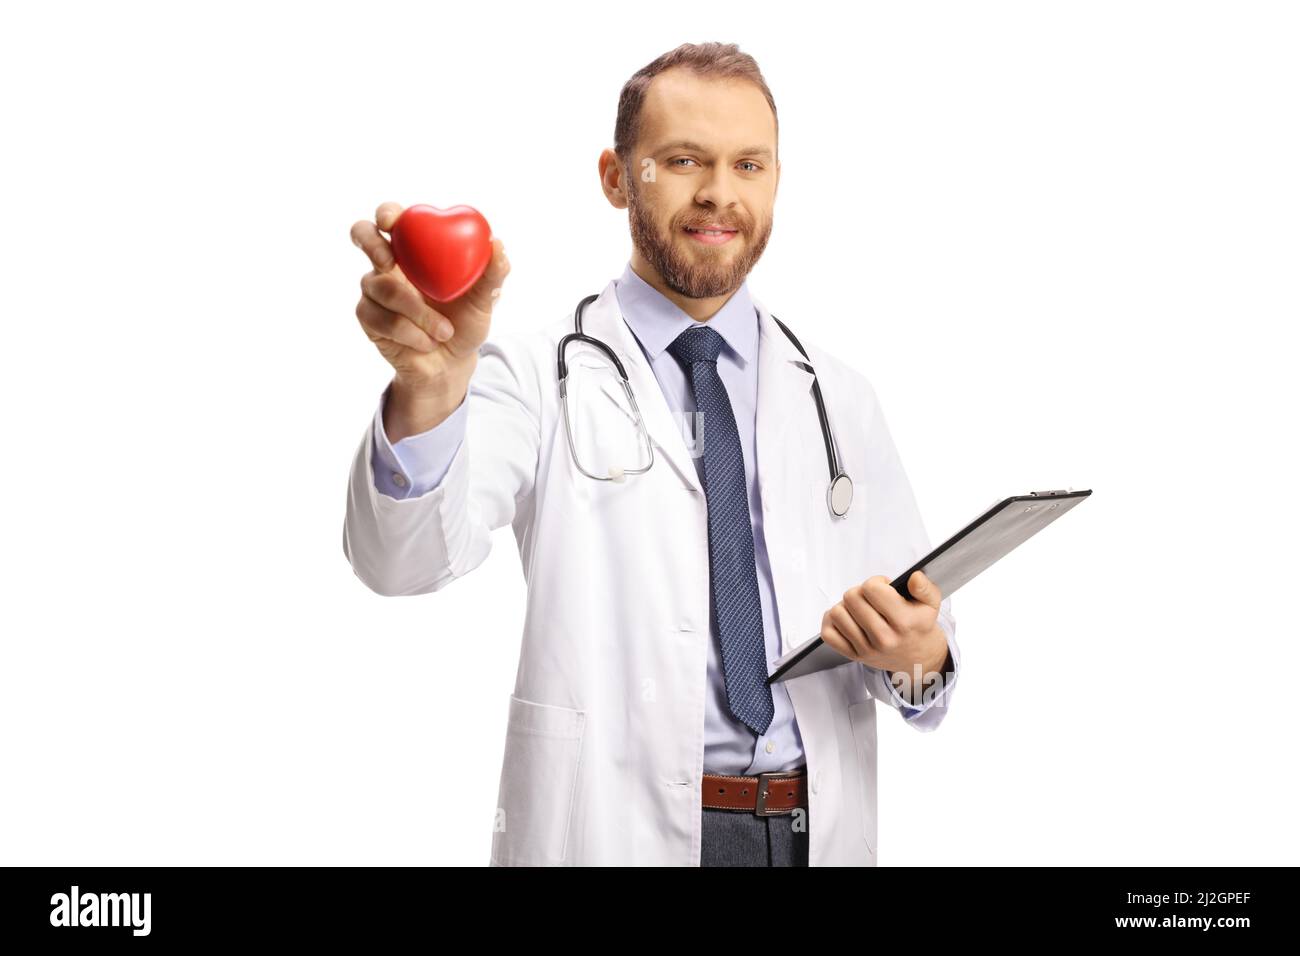 Jeune cardiologue masculin tenant un cœur rouge et regardant la caméra isolée sur fond blanc Banque D'Images